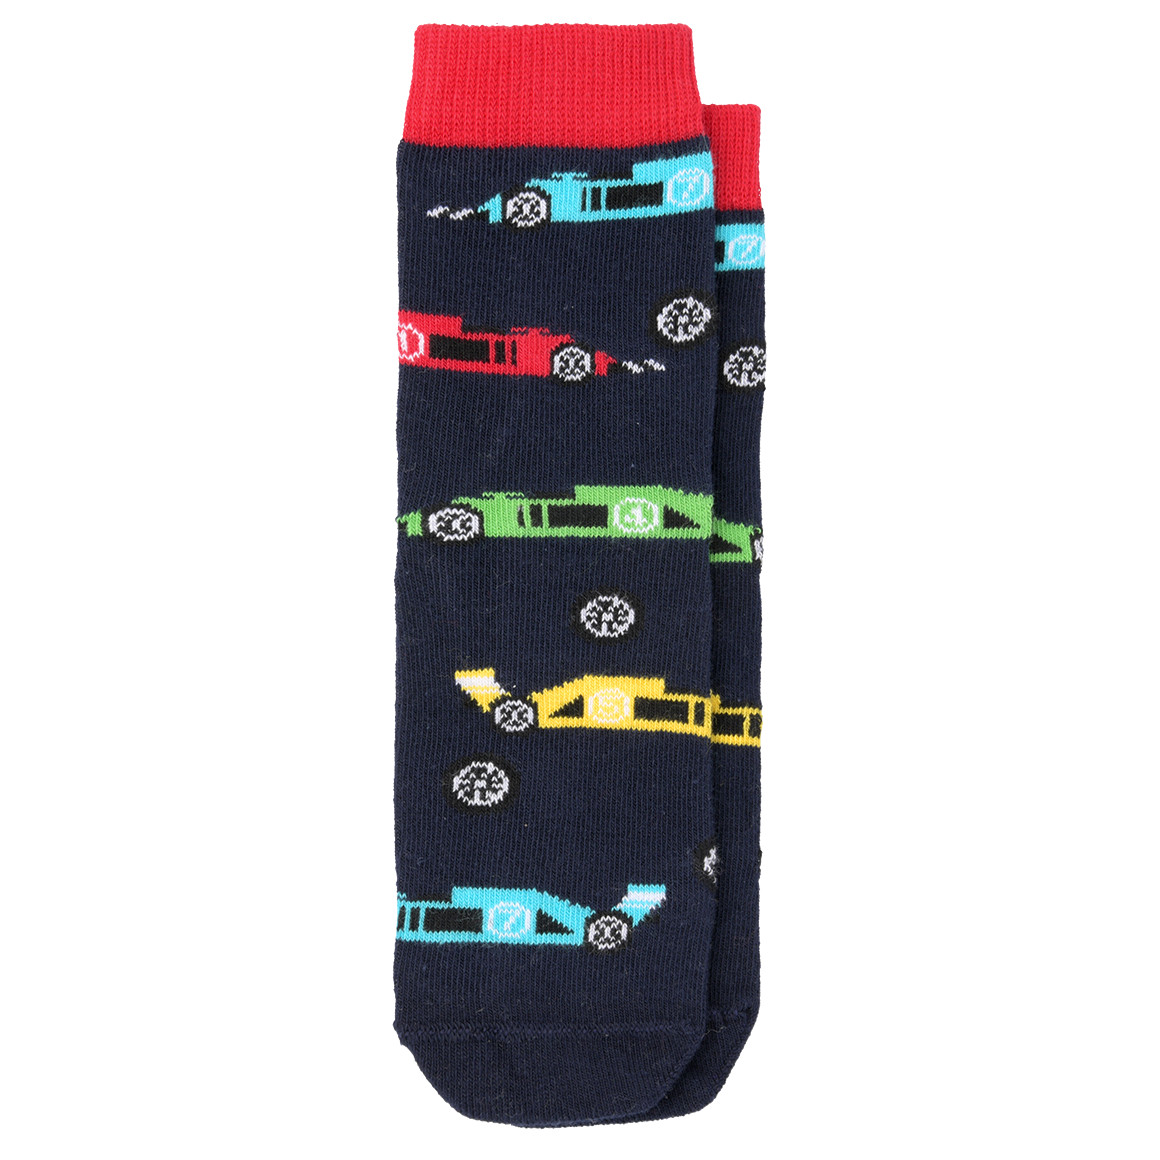 1 Paar Jungen Socken mit Rennwagen-Motiven von Topolino